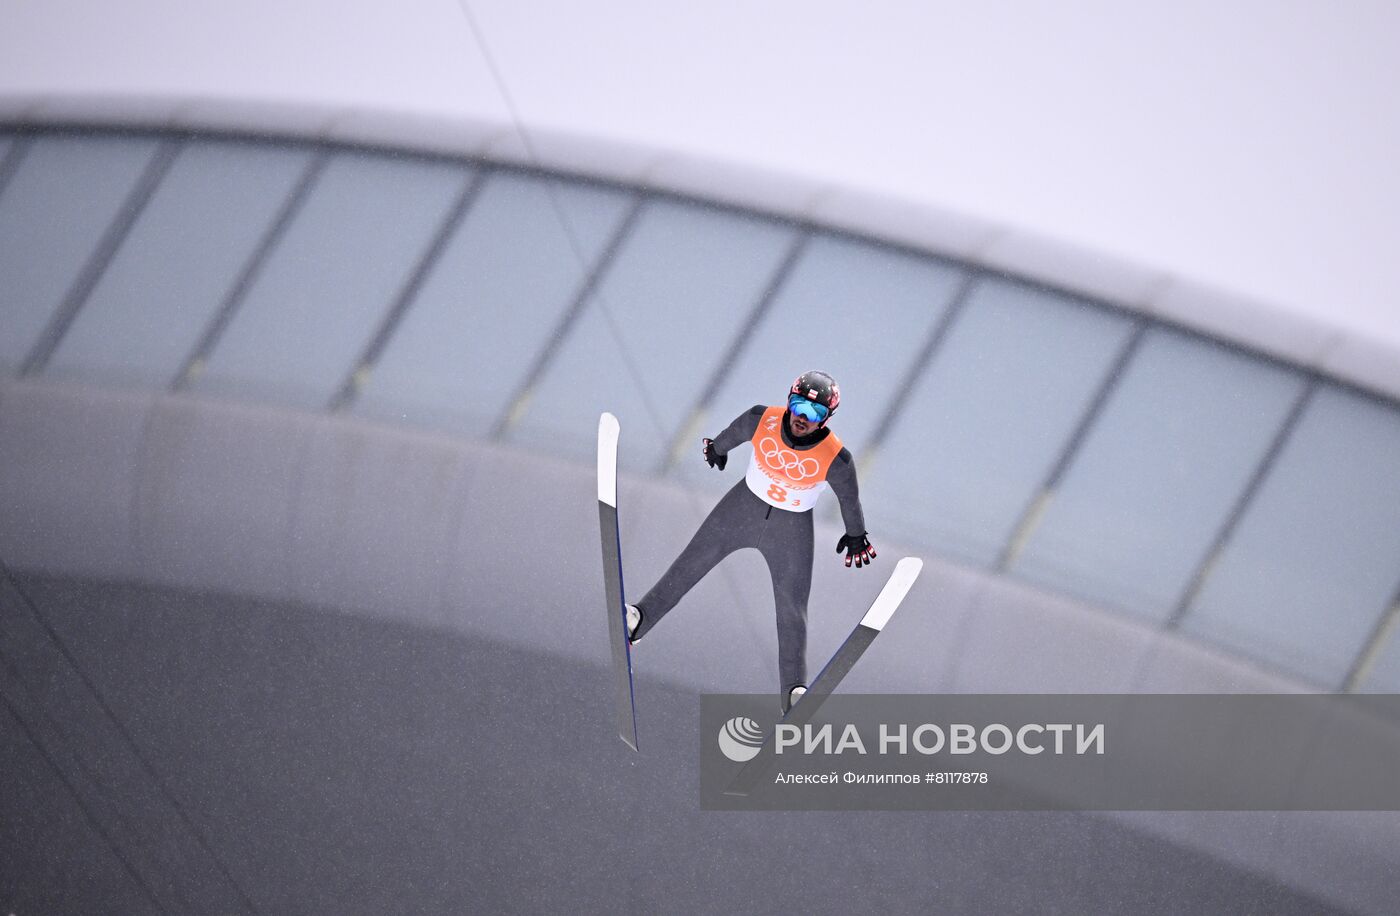 Олимпиада-2022. Лыжное двоеборье. Командные соревнования